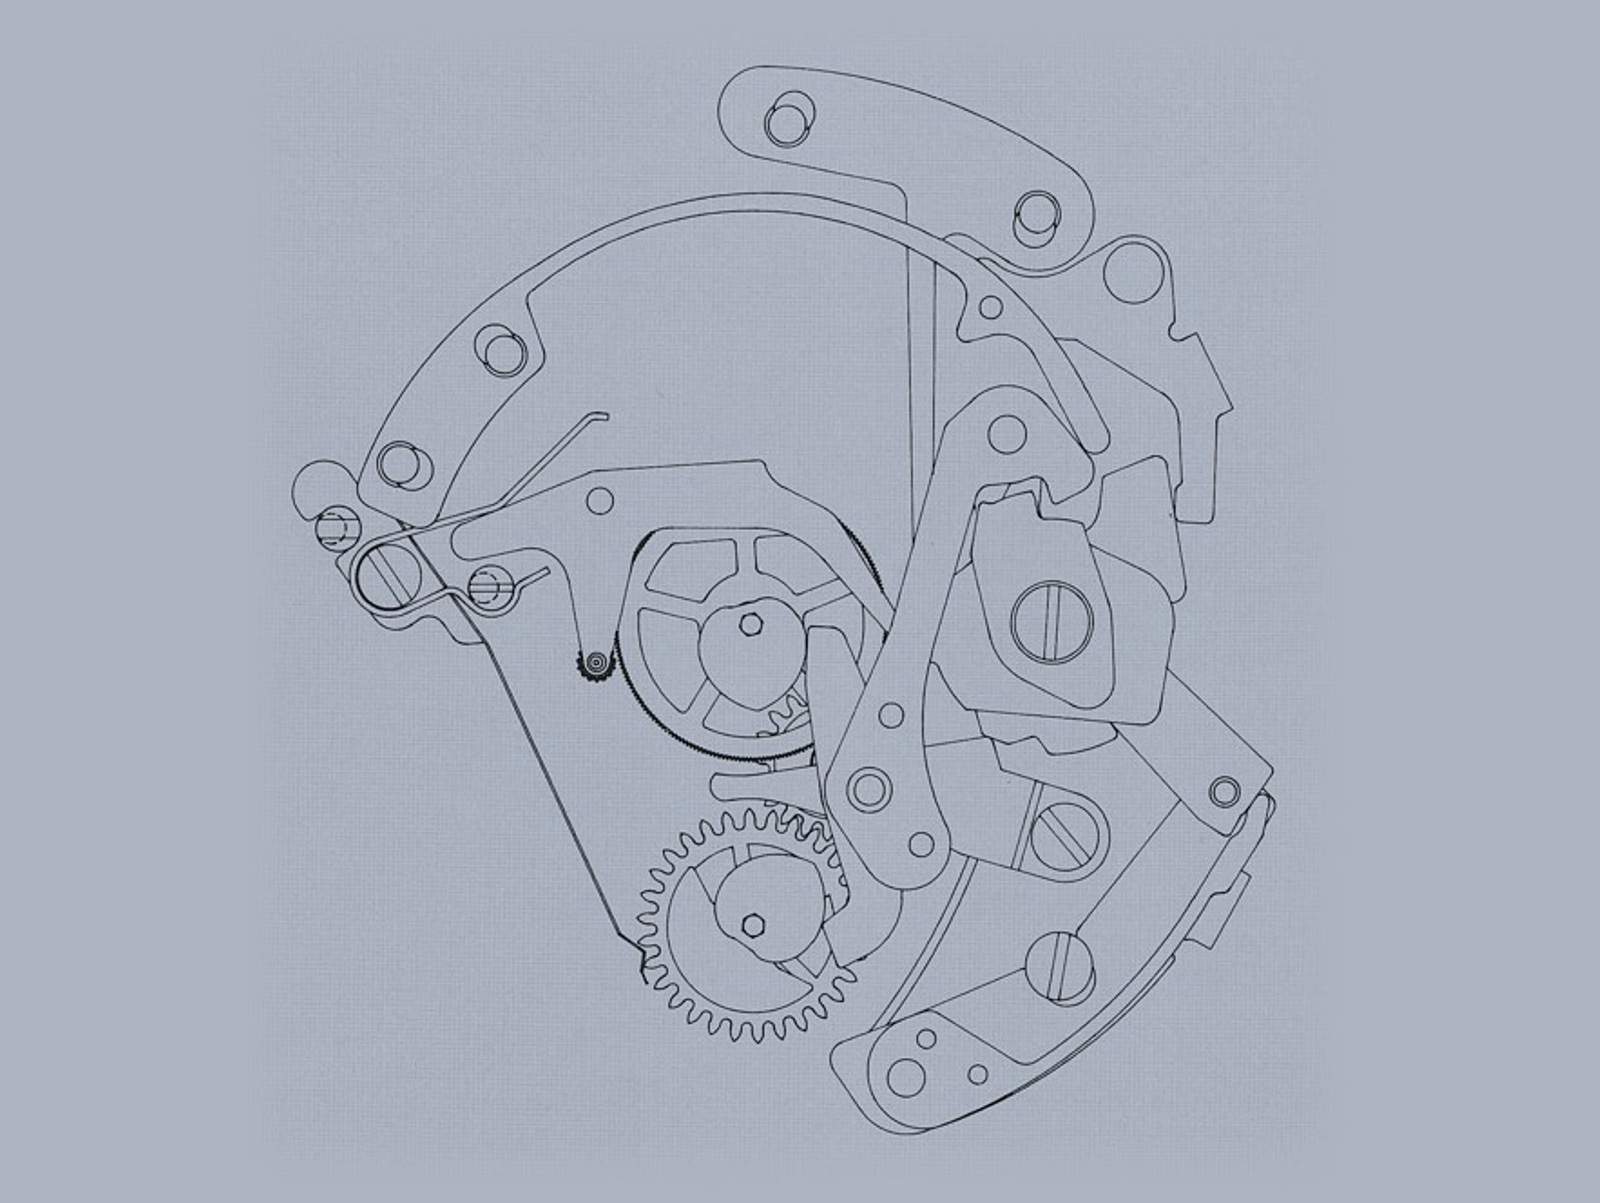 Automatikkaliber Valjoux 7750: das Schaltwerk des Chronographen als Zeichnung